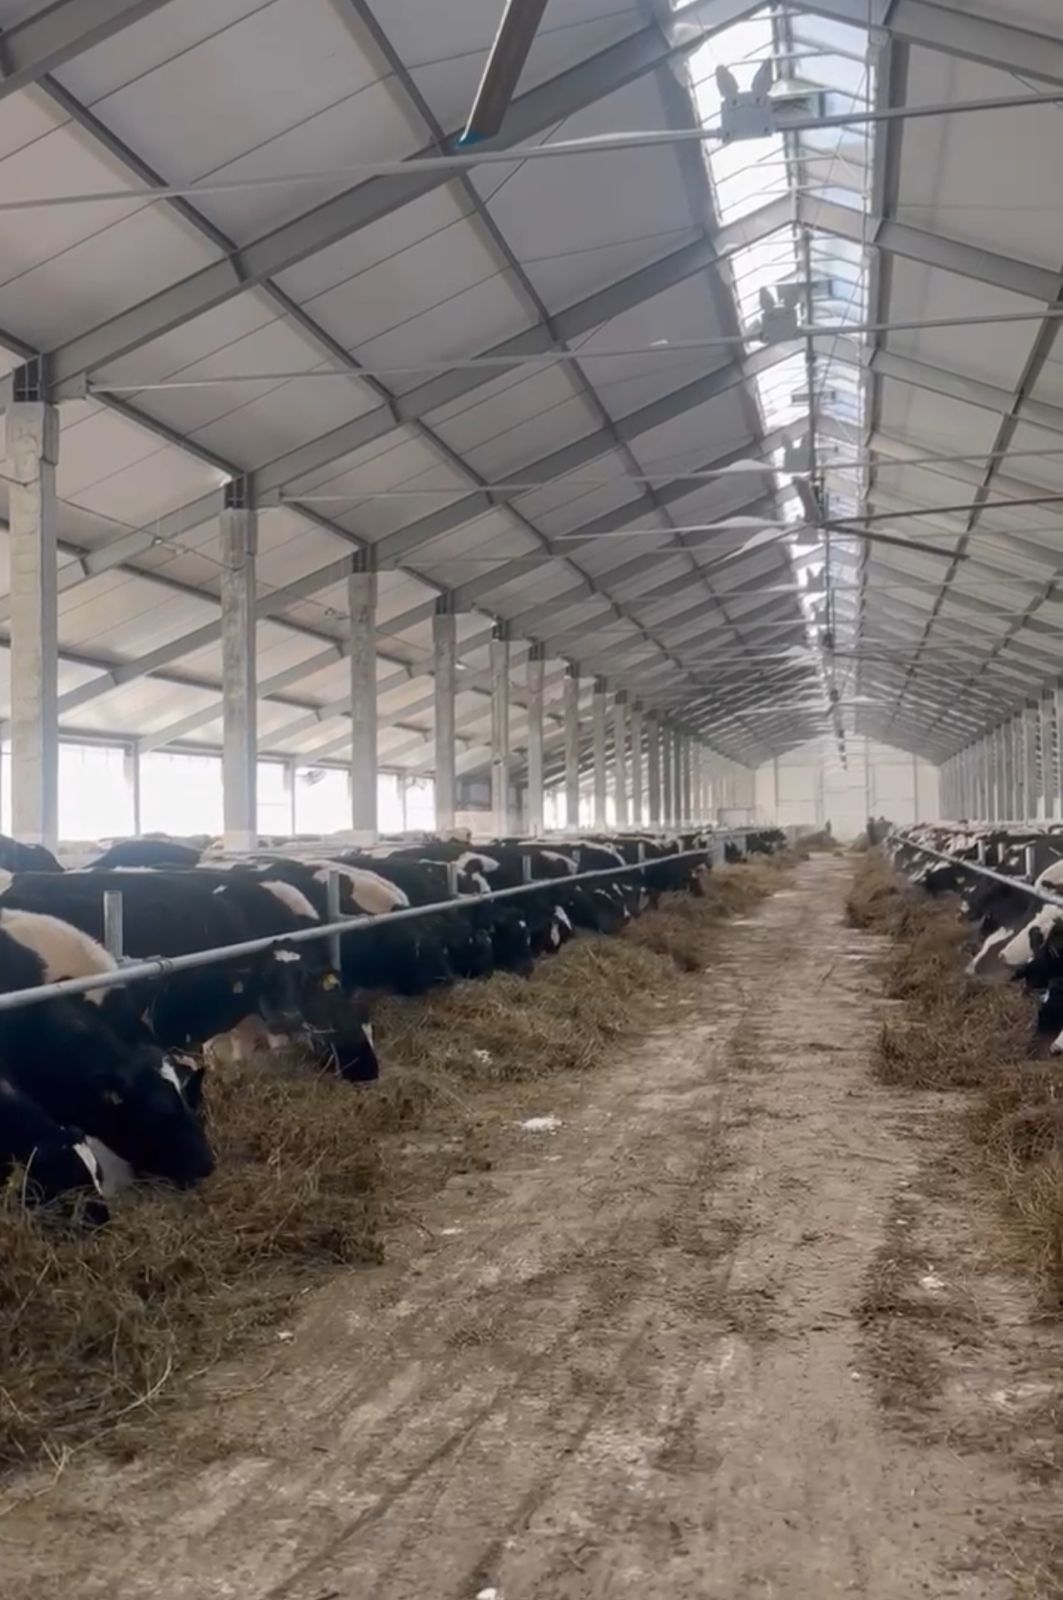 Аким города посетил село Ребровка, где ведётся строительство молочно-товарной фермы ТОО «Кронос-Павлодар».